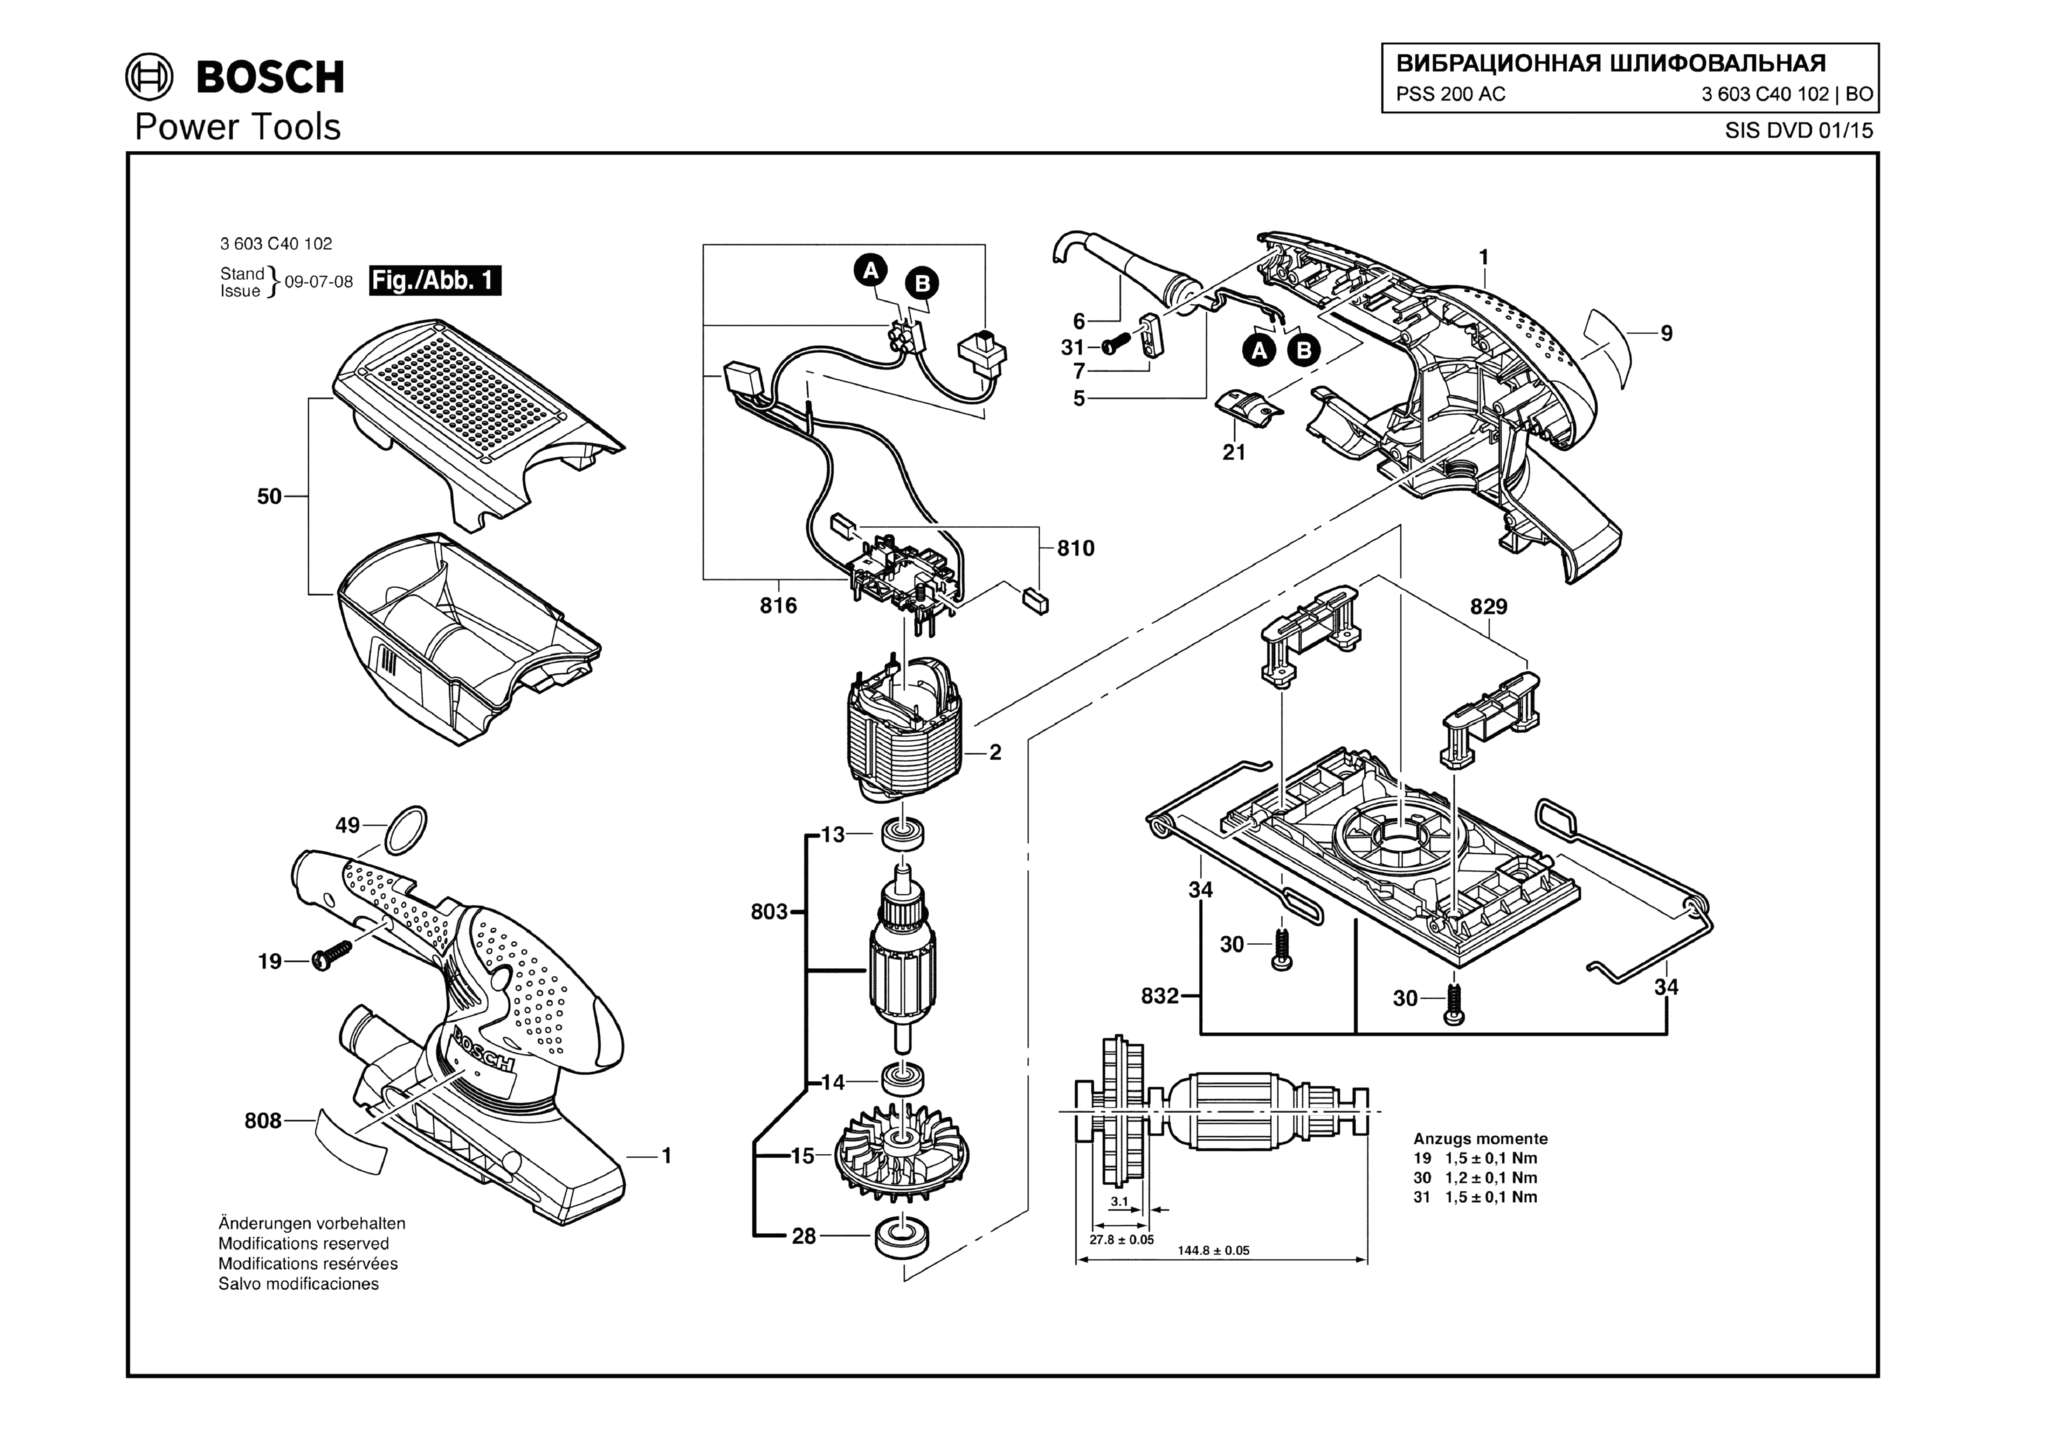 Запчасти, схема и деталировка Bosch PSS 200 AC (ТИП 3603C40102)